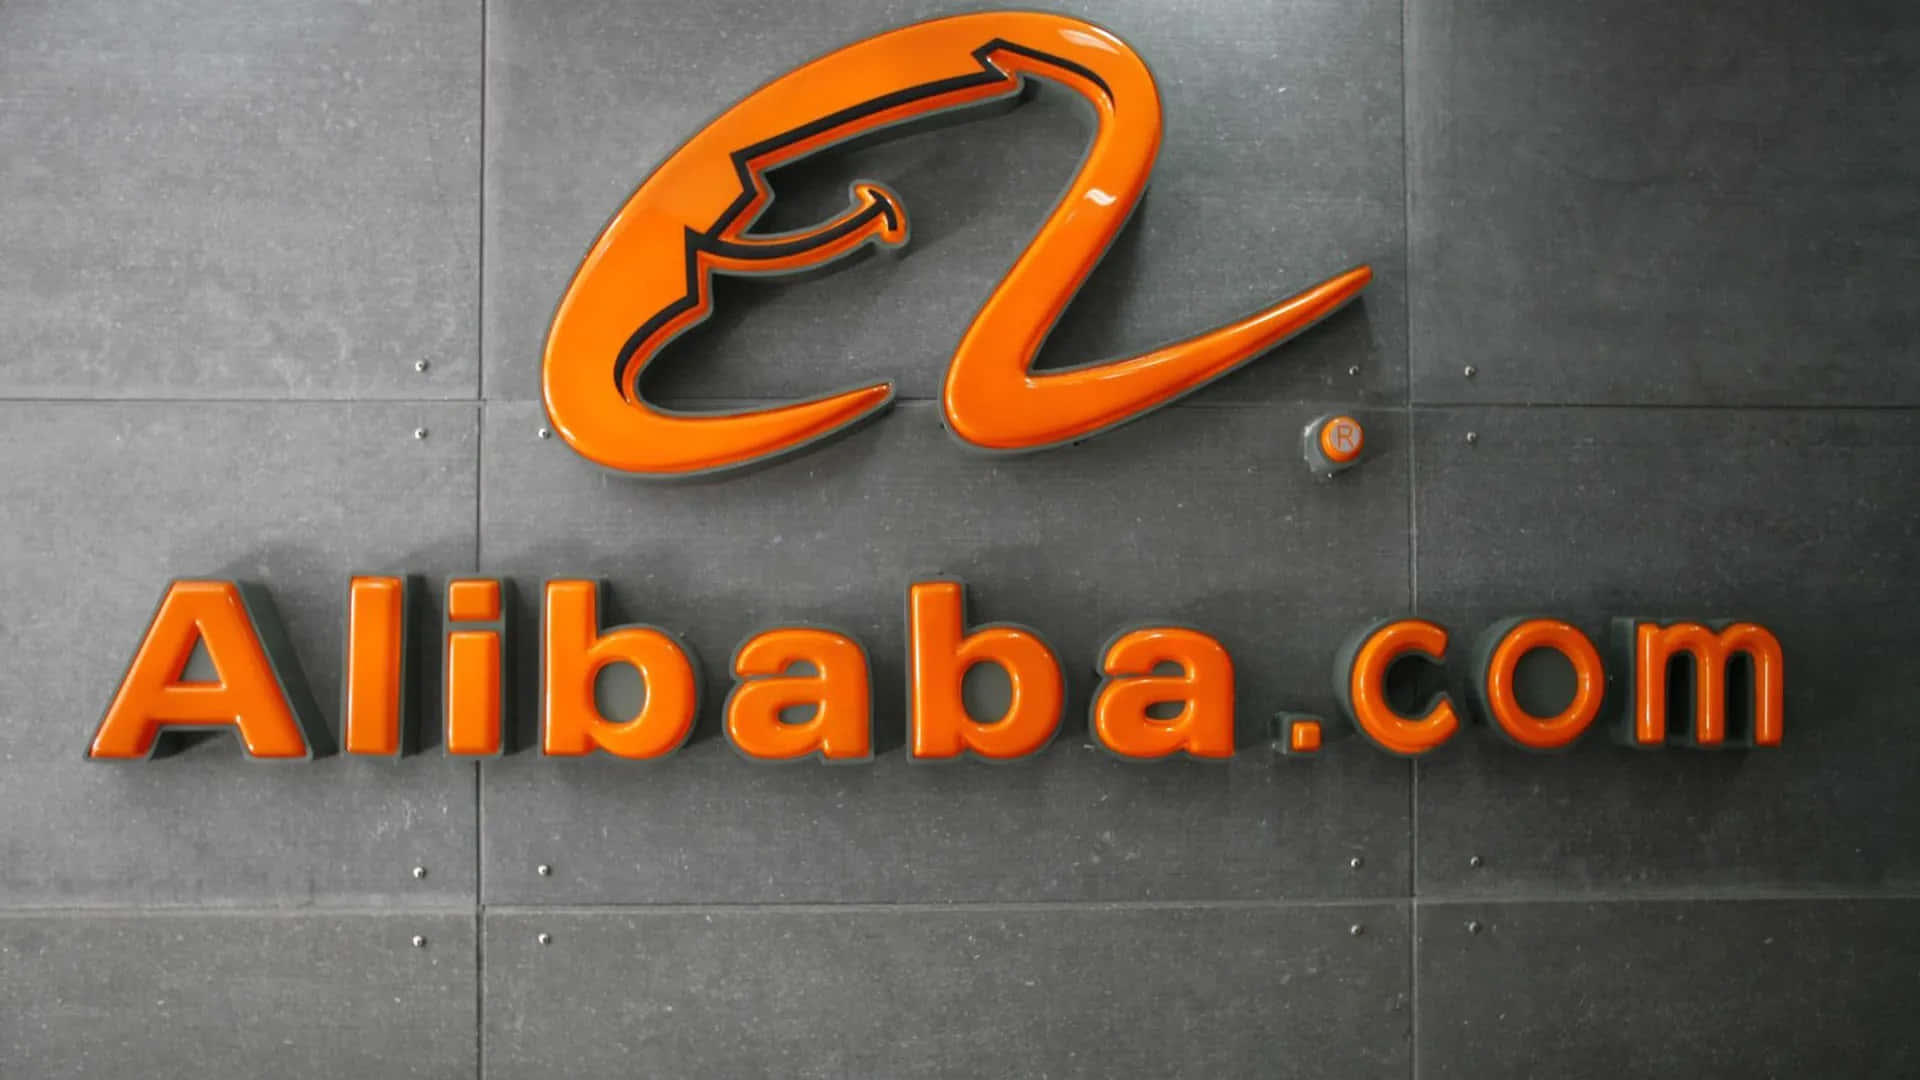 Desbloqueatu Potencial Empresarial Con Alibaba.